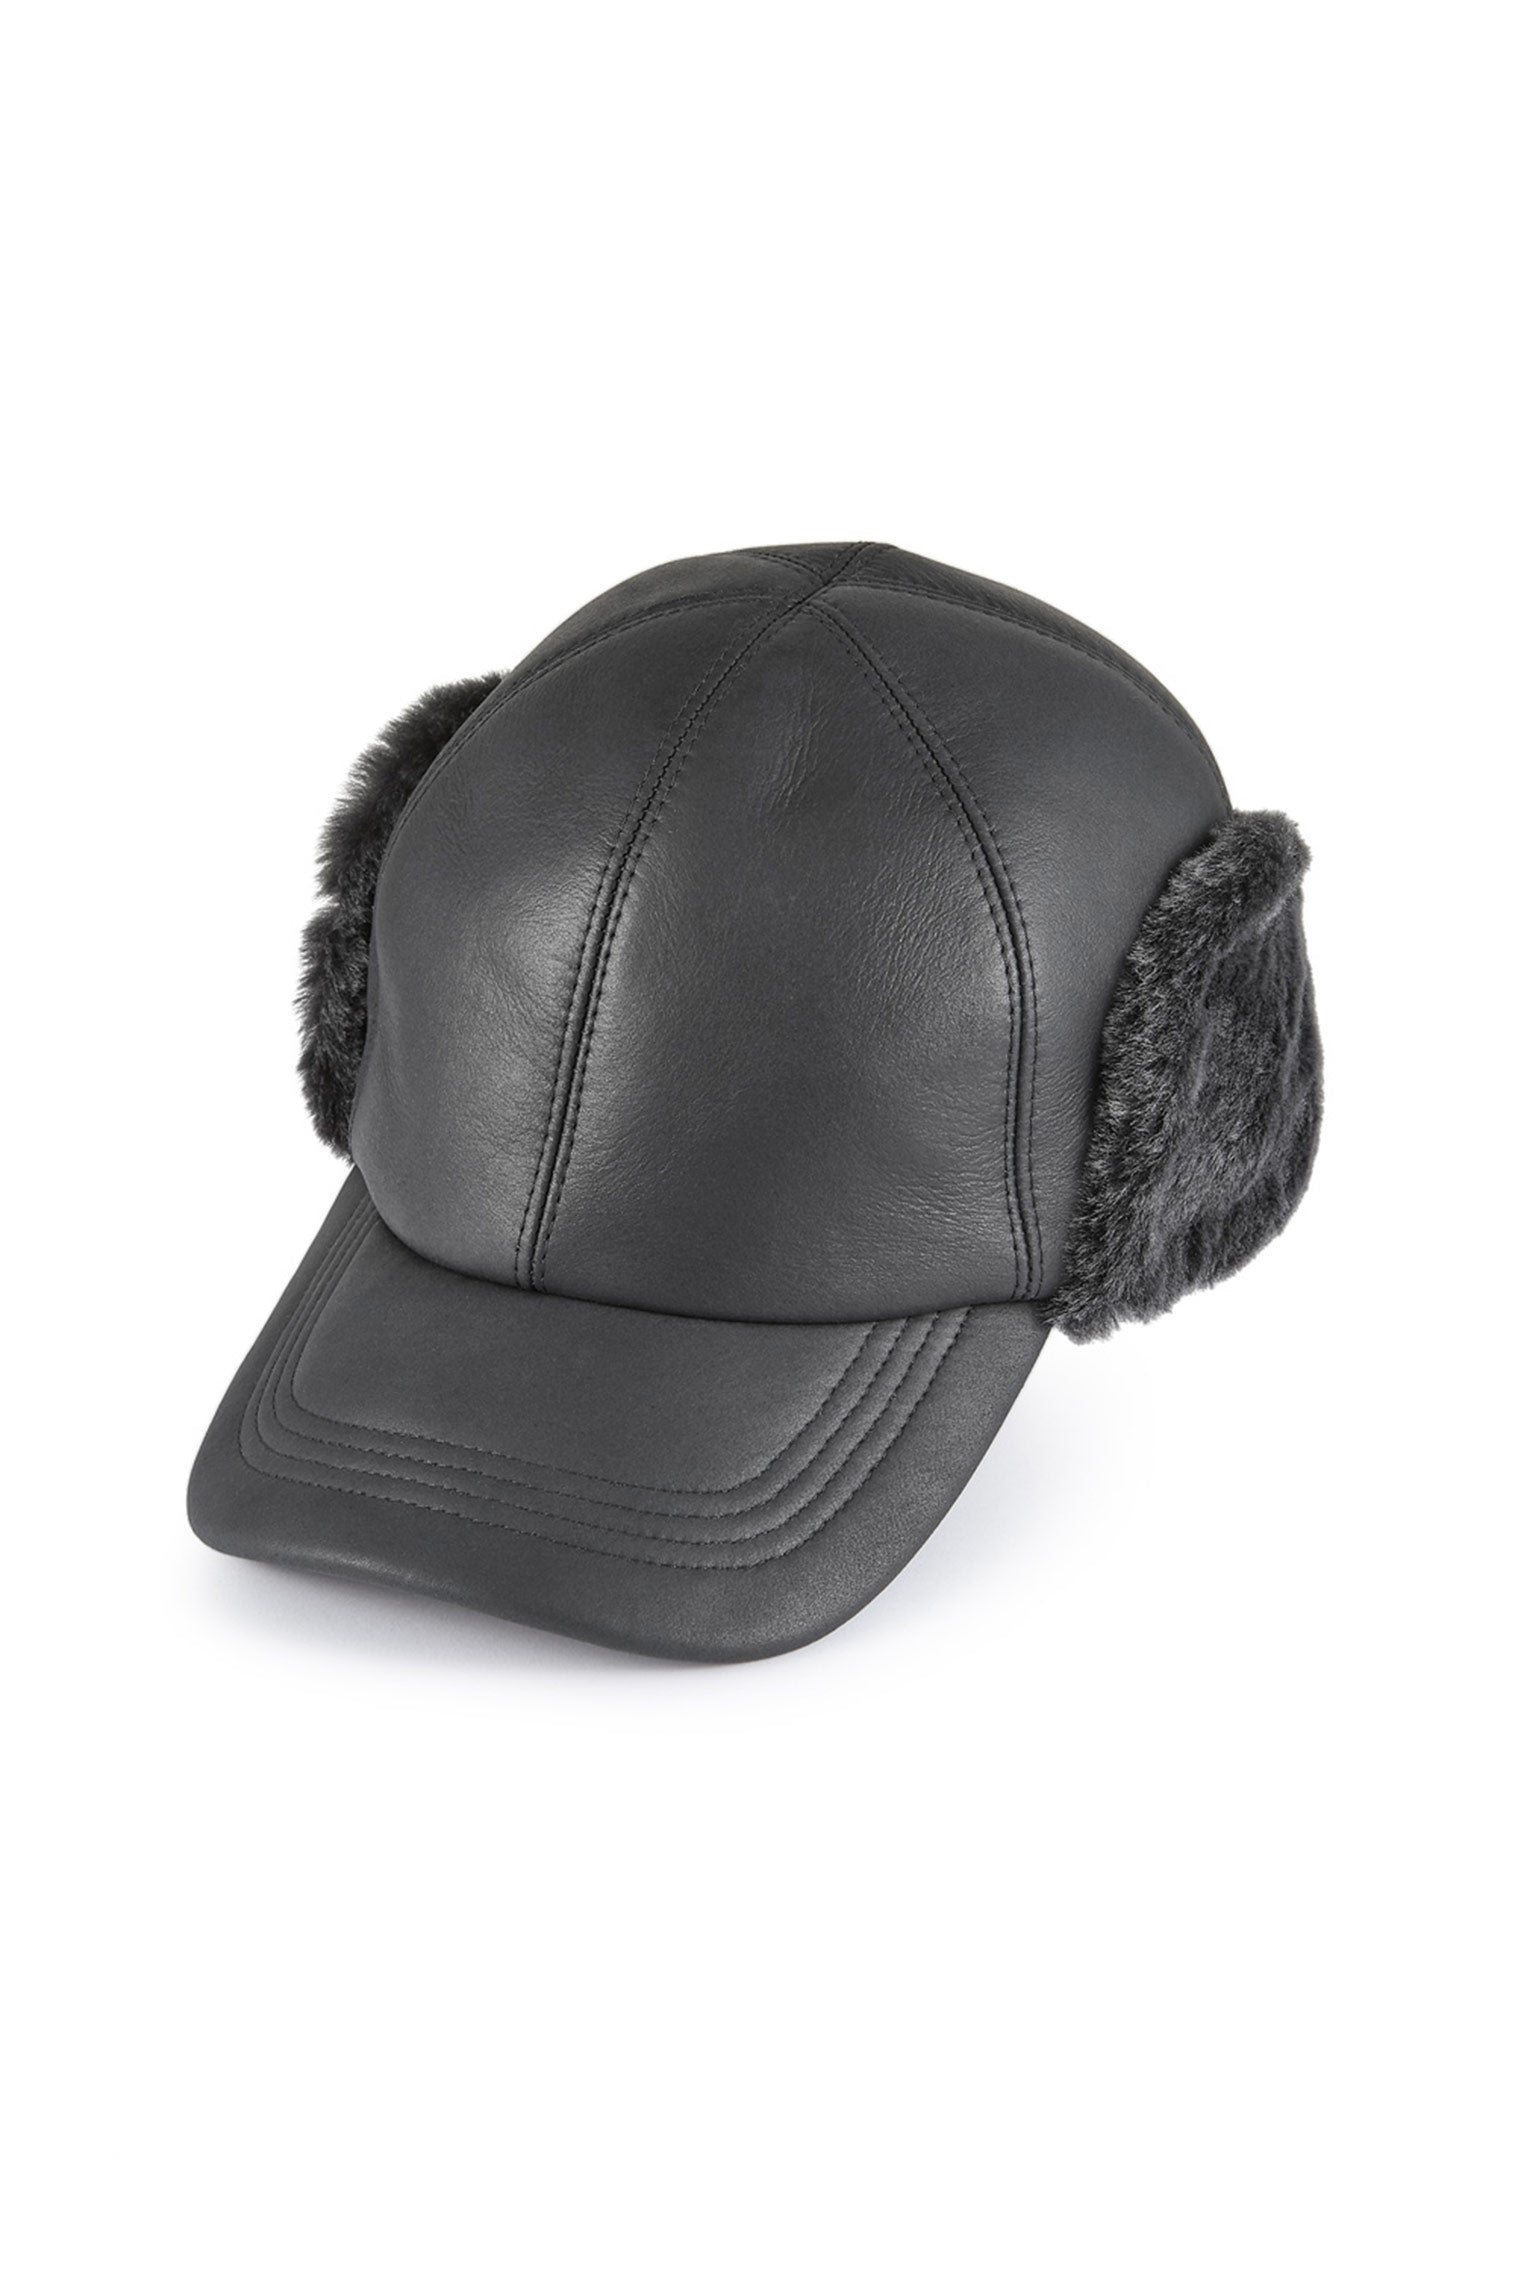 Winnipeg Sheepskin Baseball Cap - Hats with Ear Flaps - Lock & Co. Hatters London UK